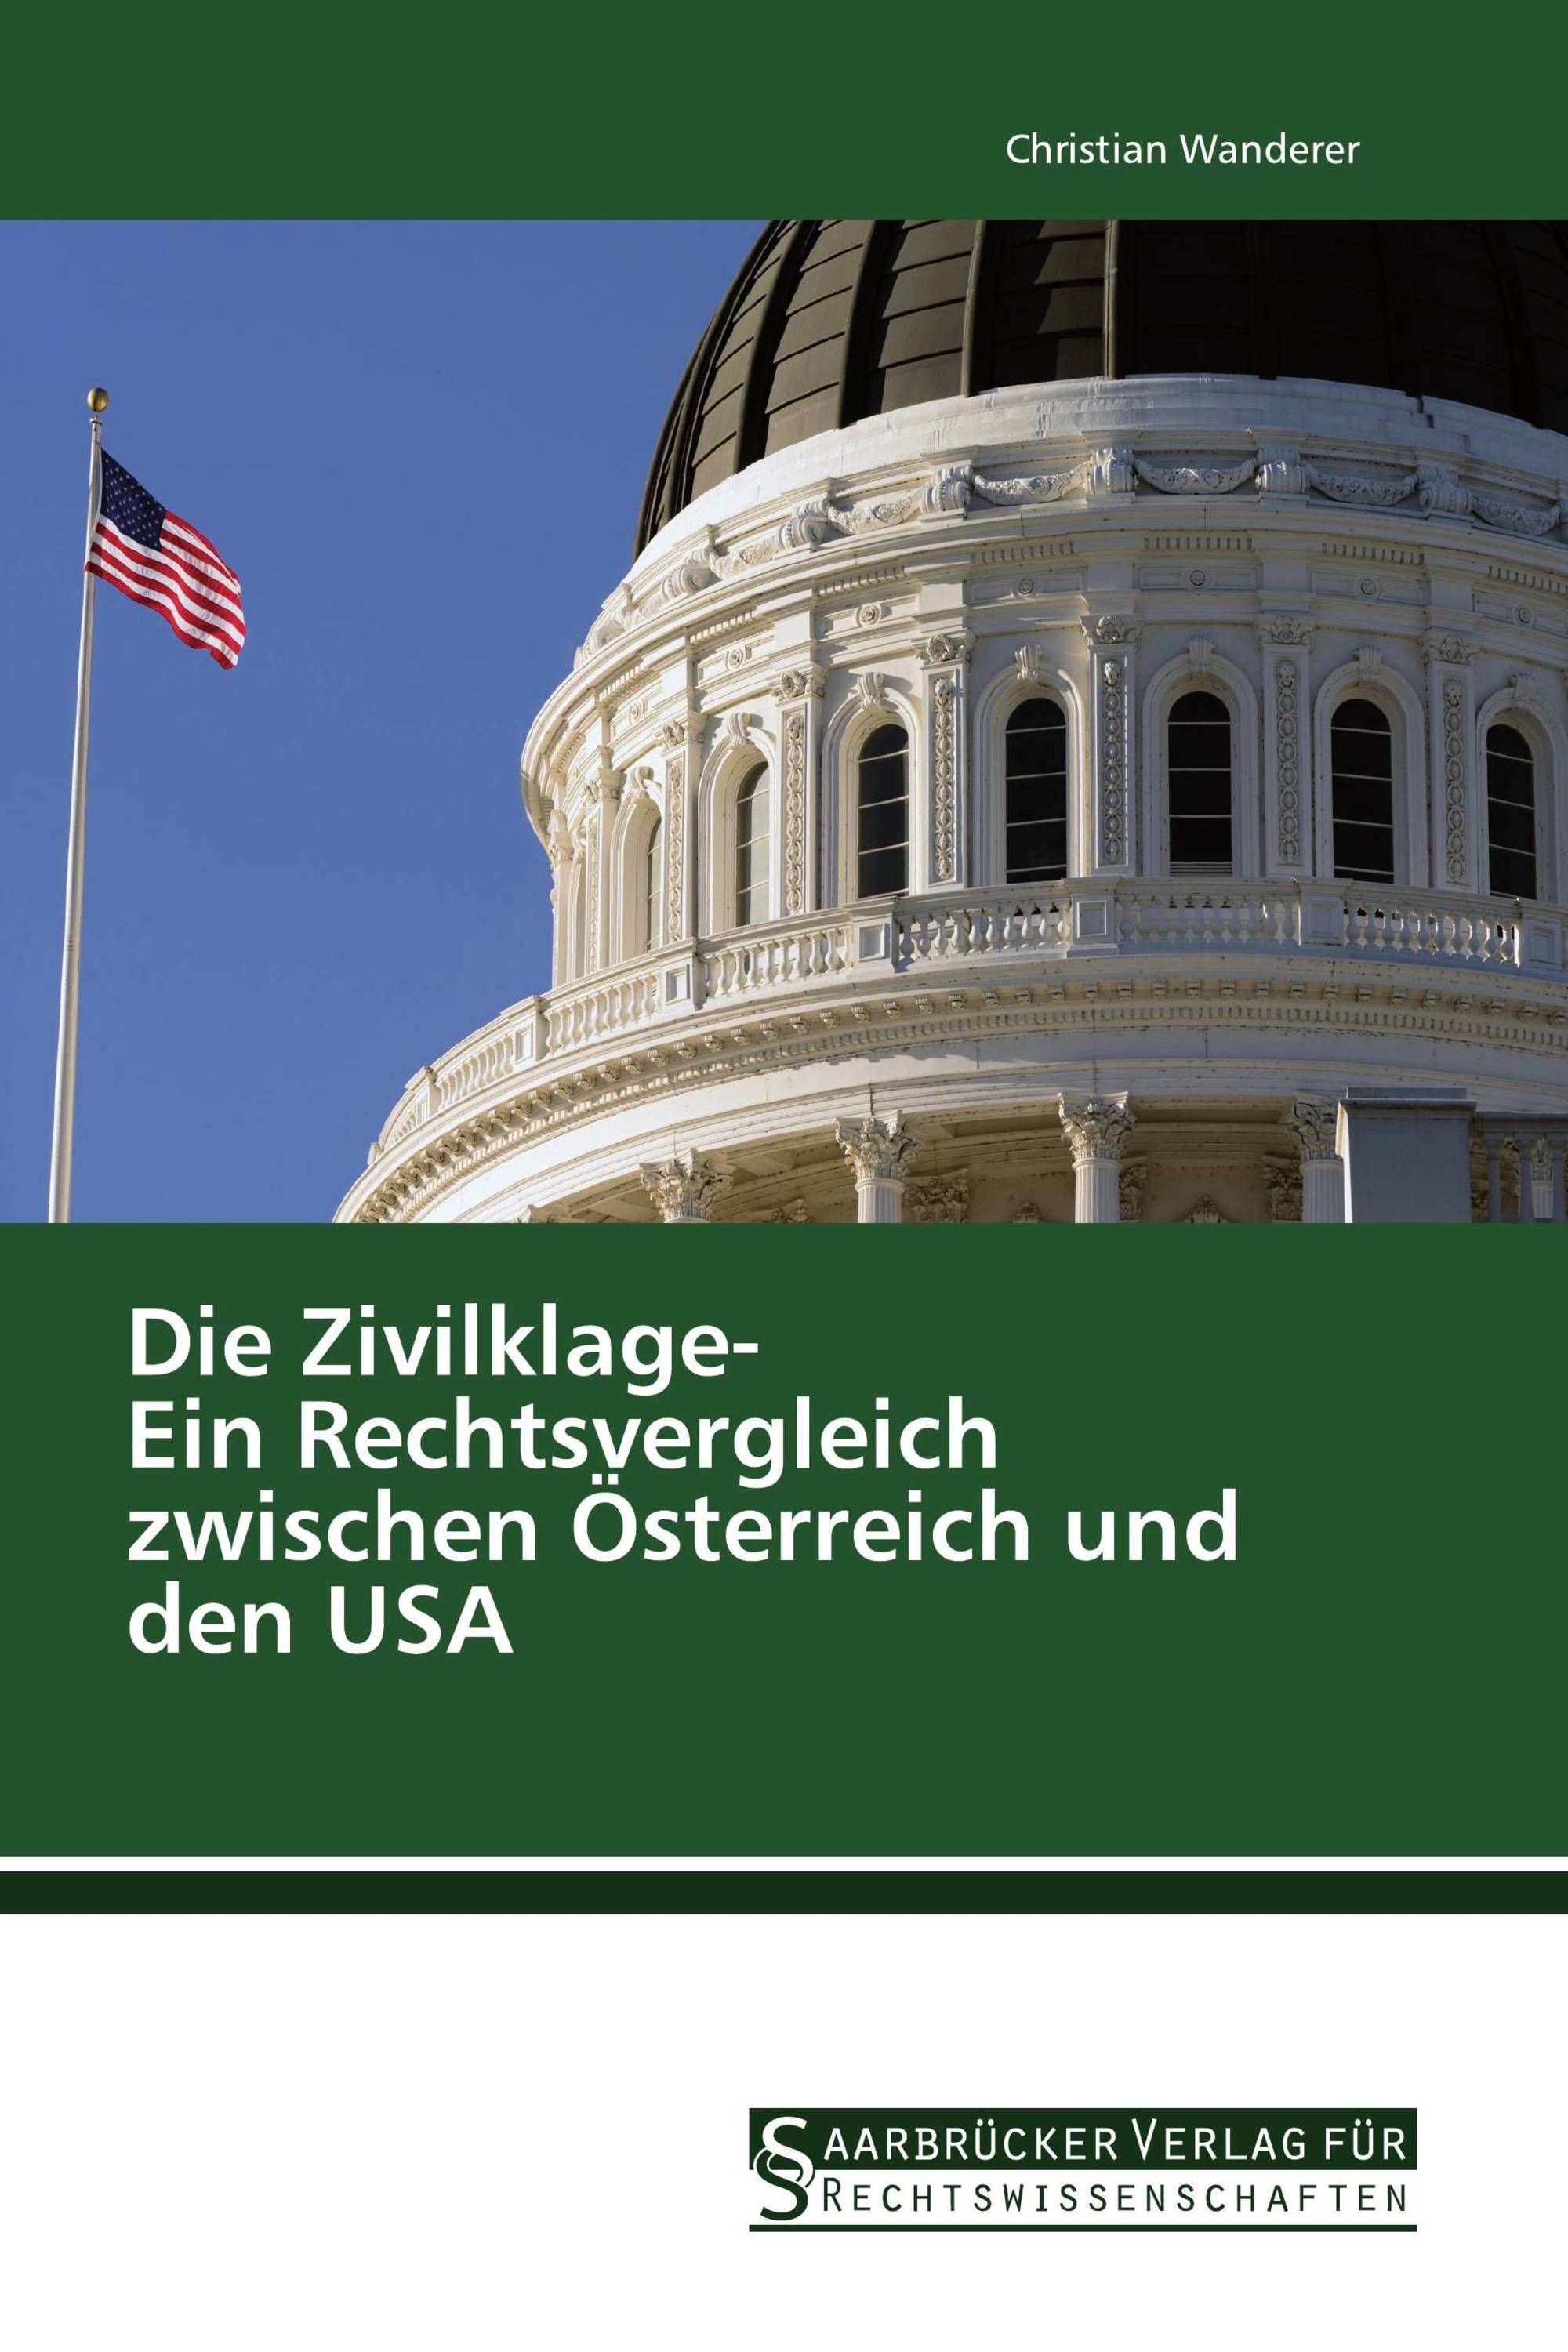 Die Zivilklage- Ein Rechtsvergleich zwischen Österreich und den USA